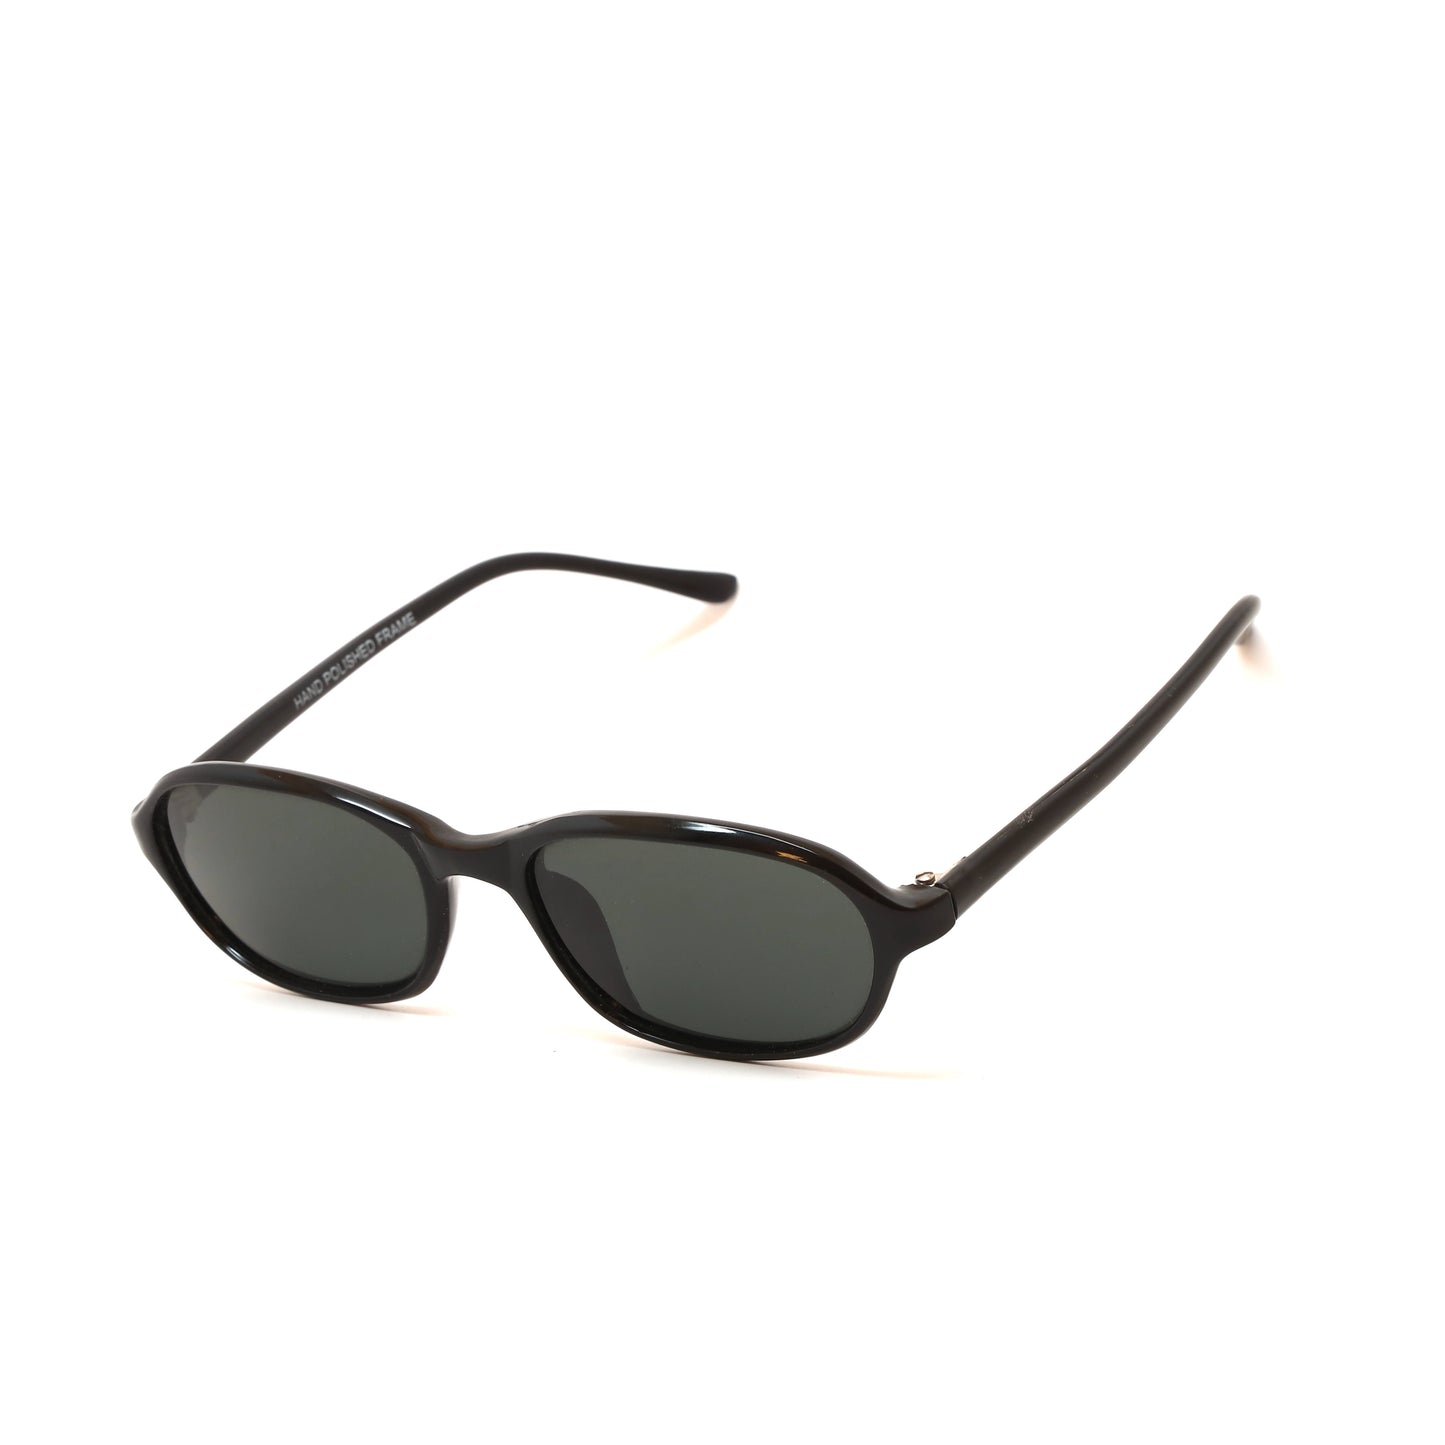 Vintage Standard Size 90s Deadstock Oval Frame Sunglasses - Black